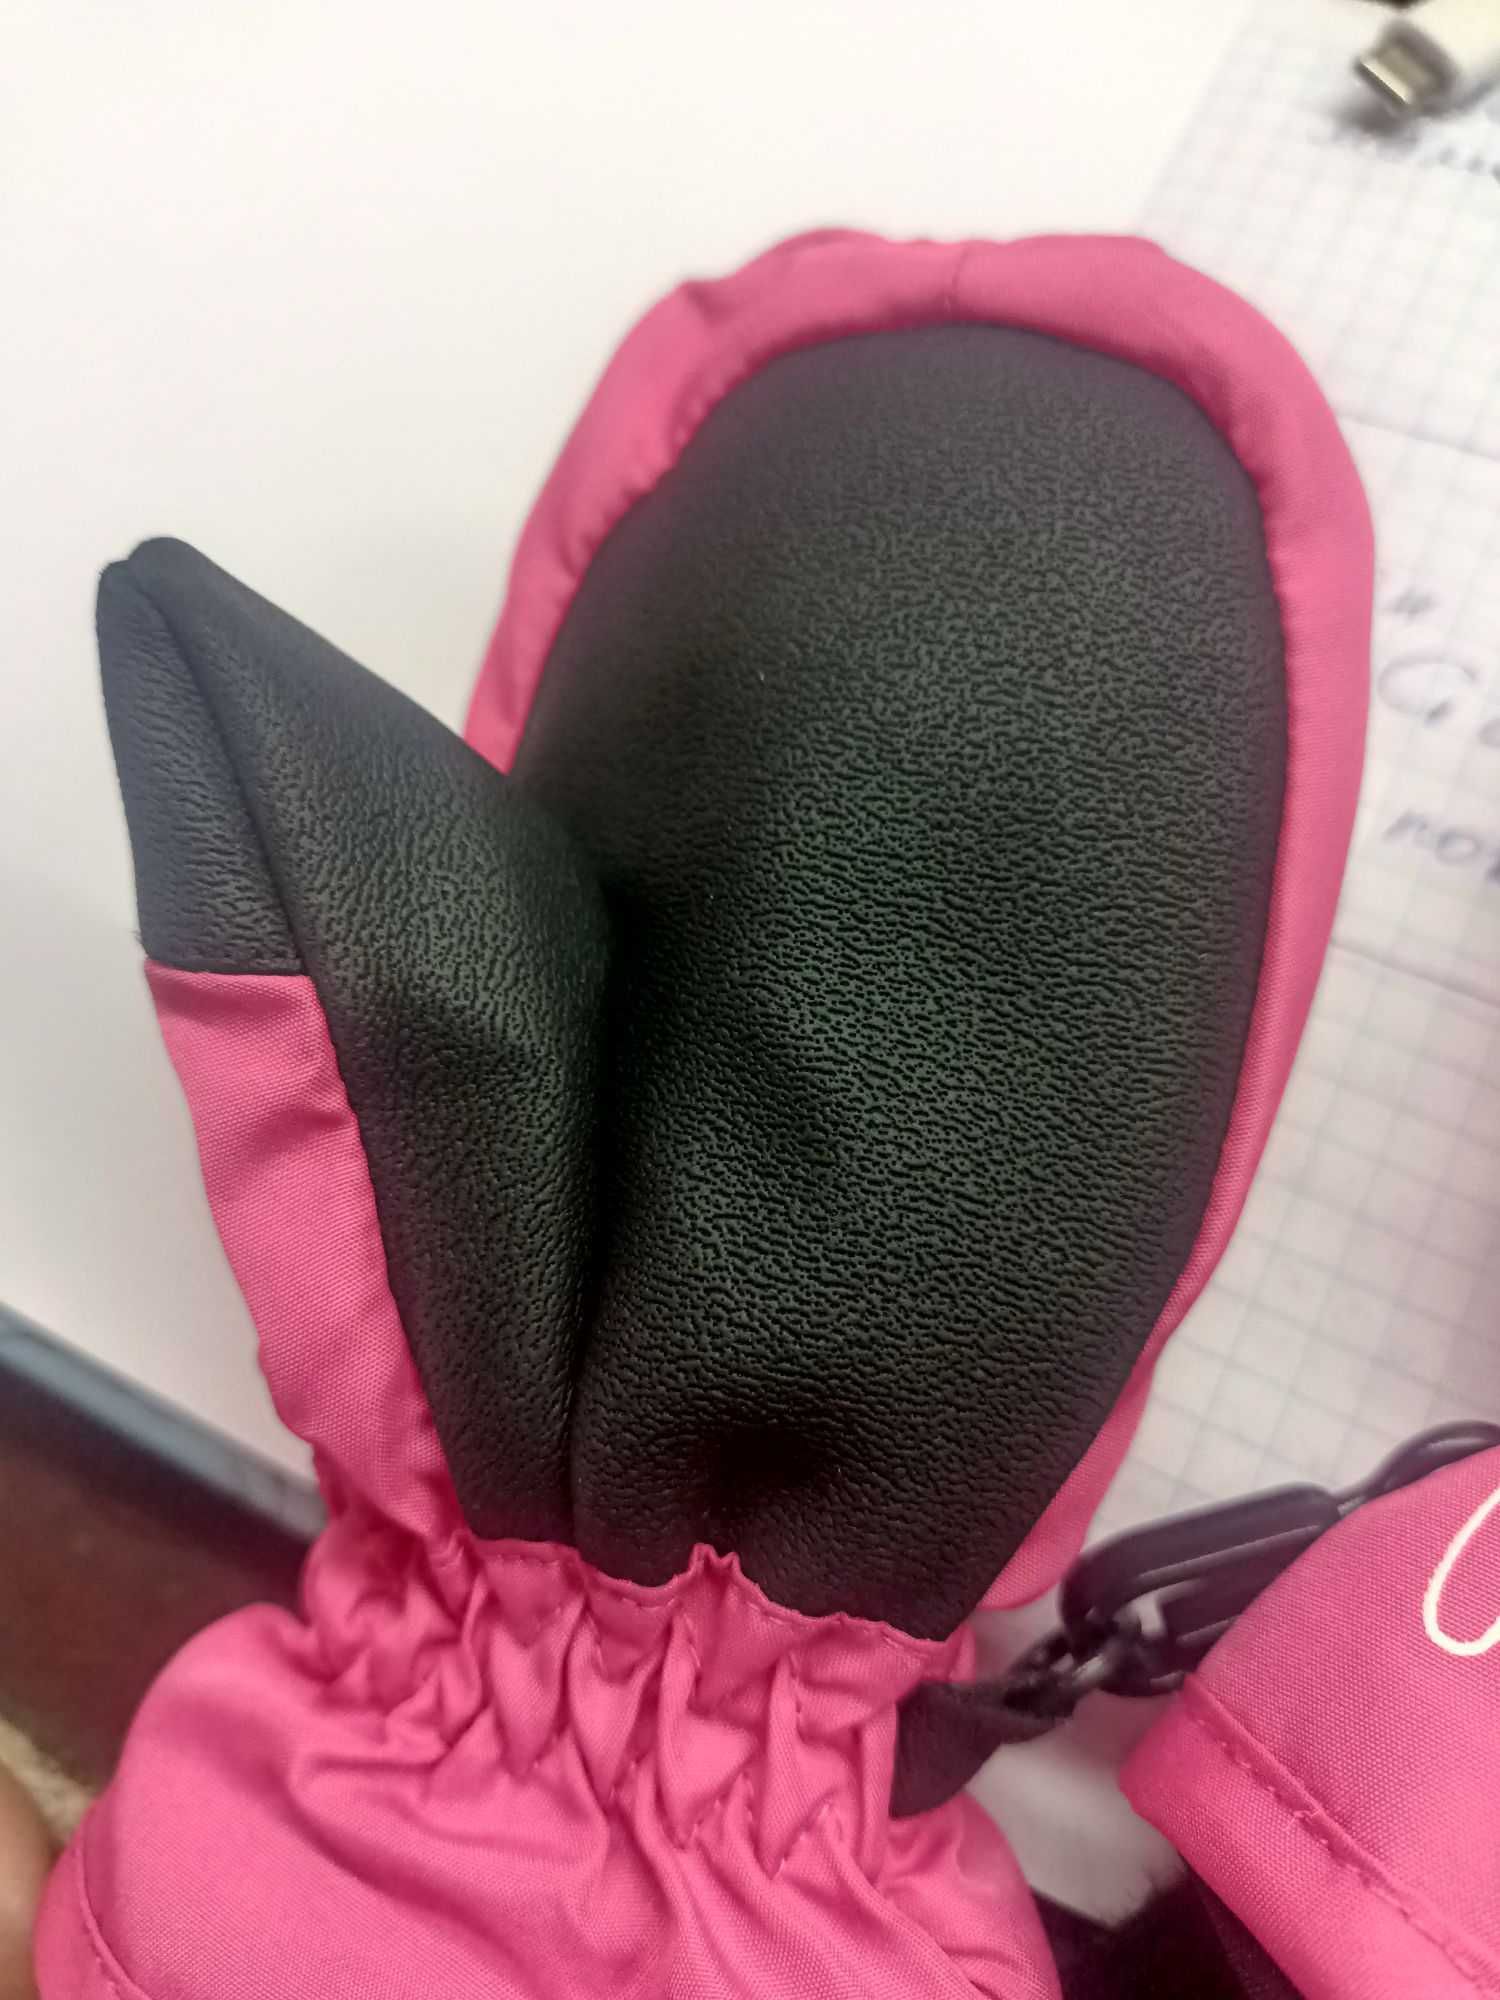 Перчатки варежки 1 год рукавицы на девочку краги детские